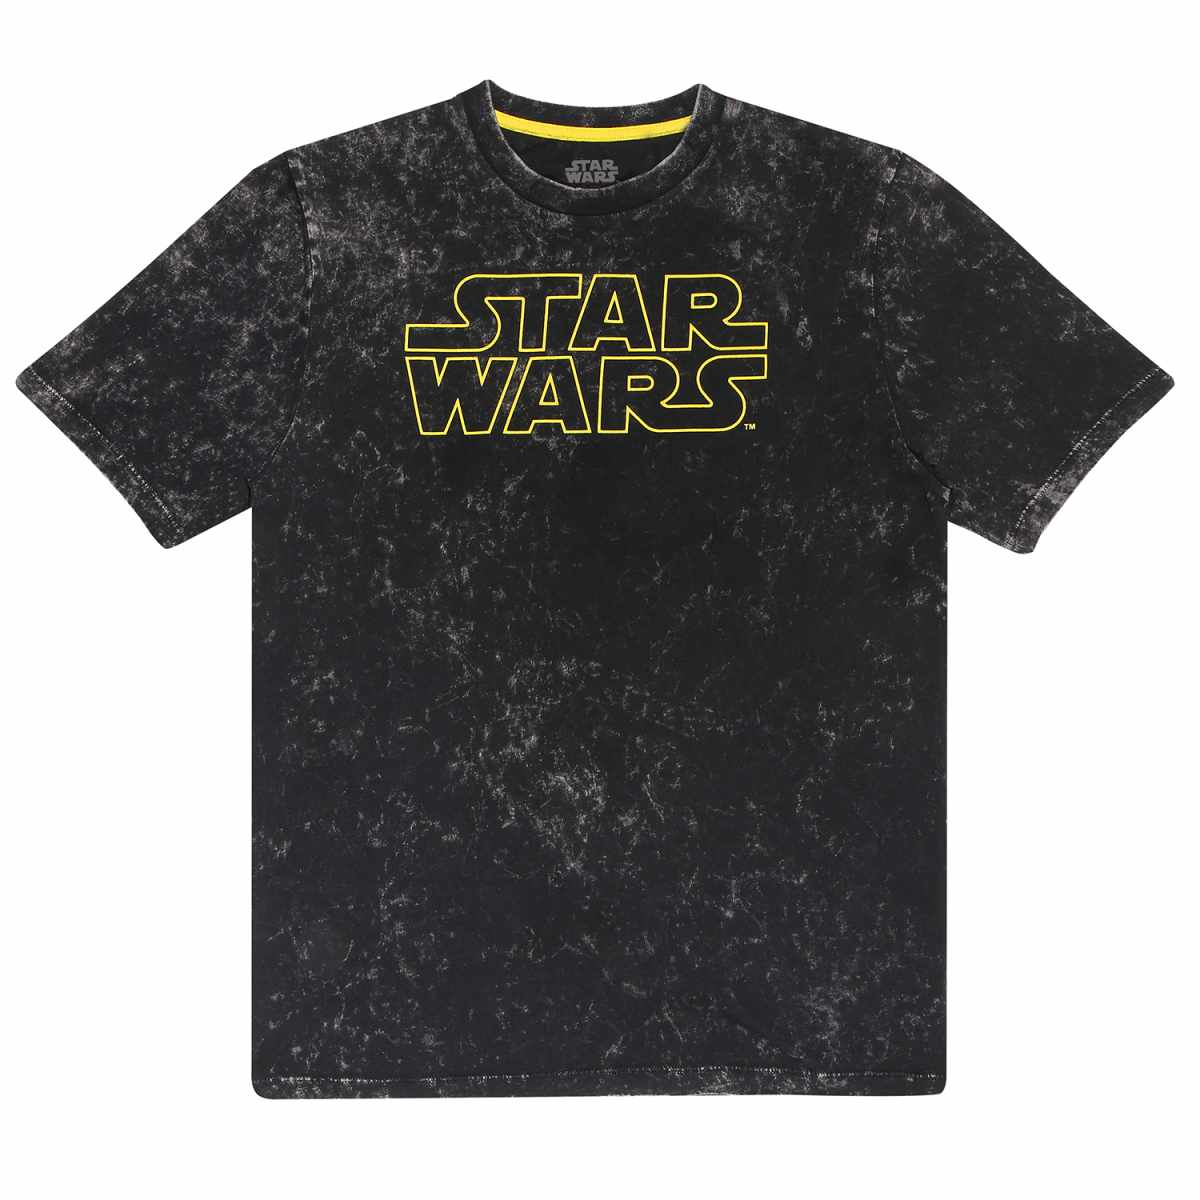 Star Wars In A Galaxy Far Far Away T-Shirt